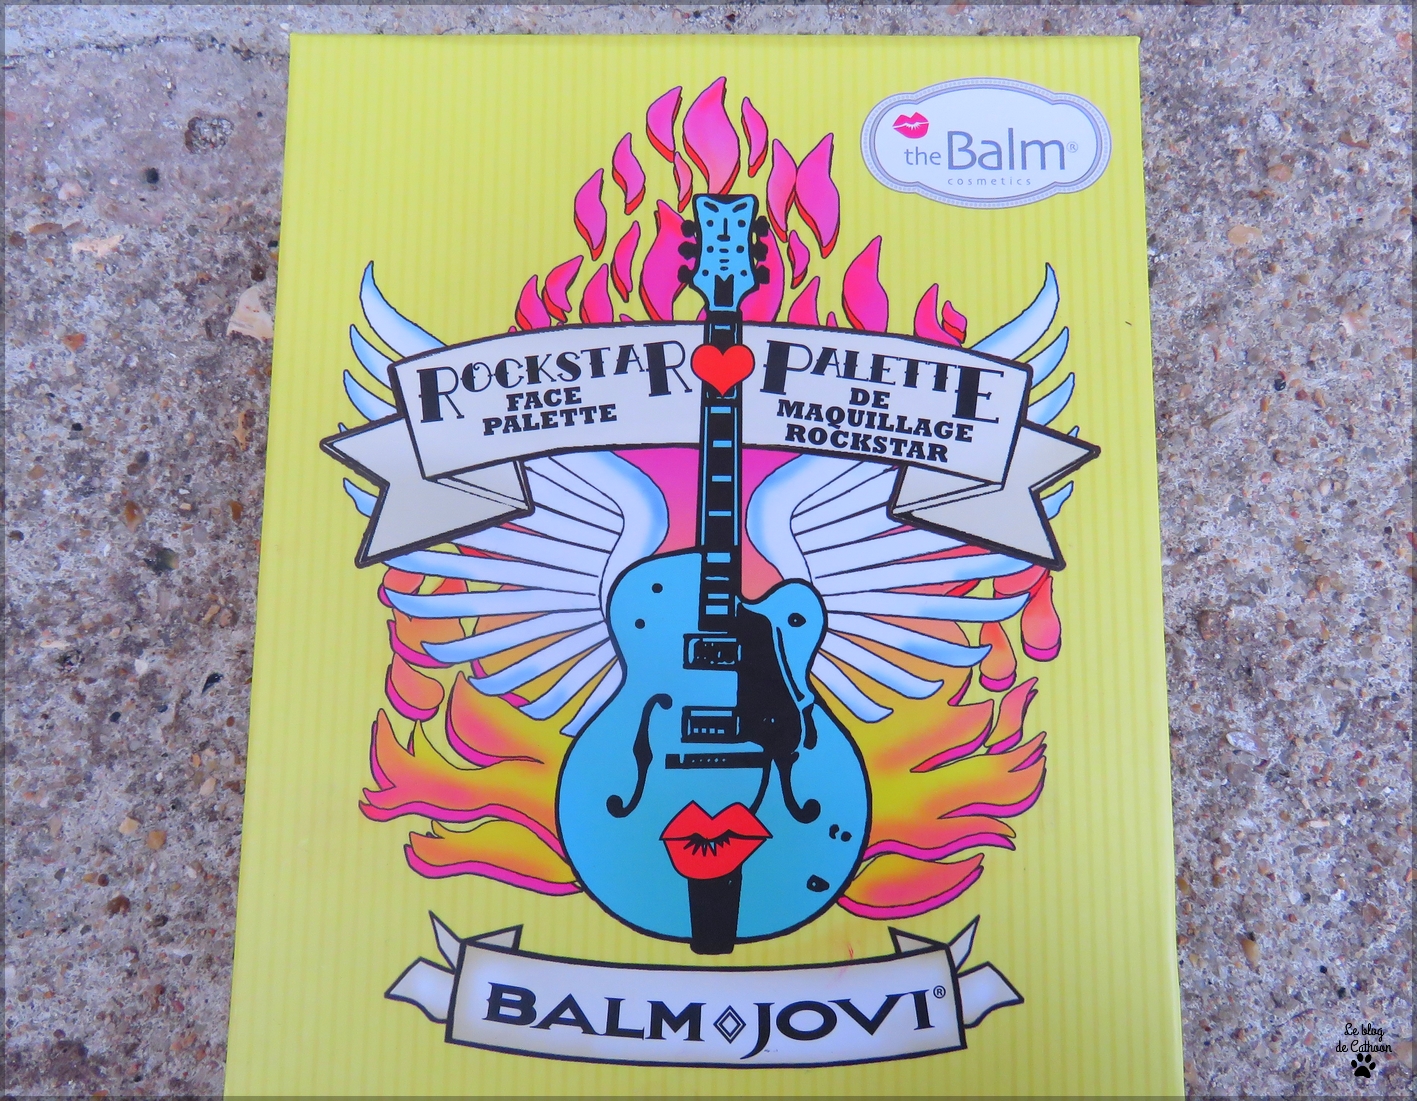 Rock Star Palette - Balm ♢ Jovi - The Balm